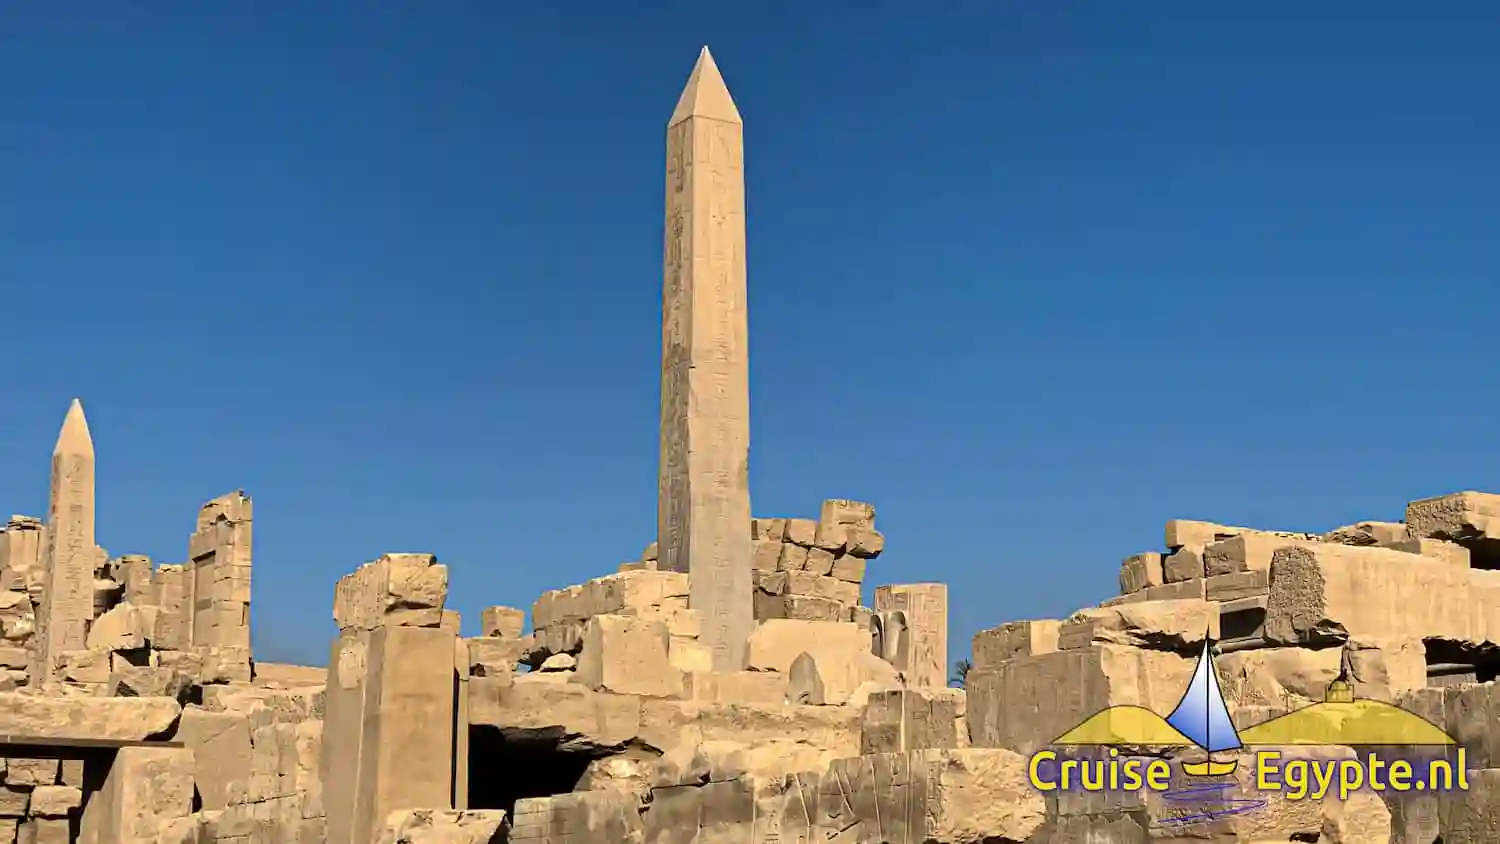 Karnak tempel met de obelisken Hatshepsut en Thutmose I